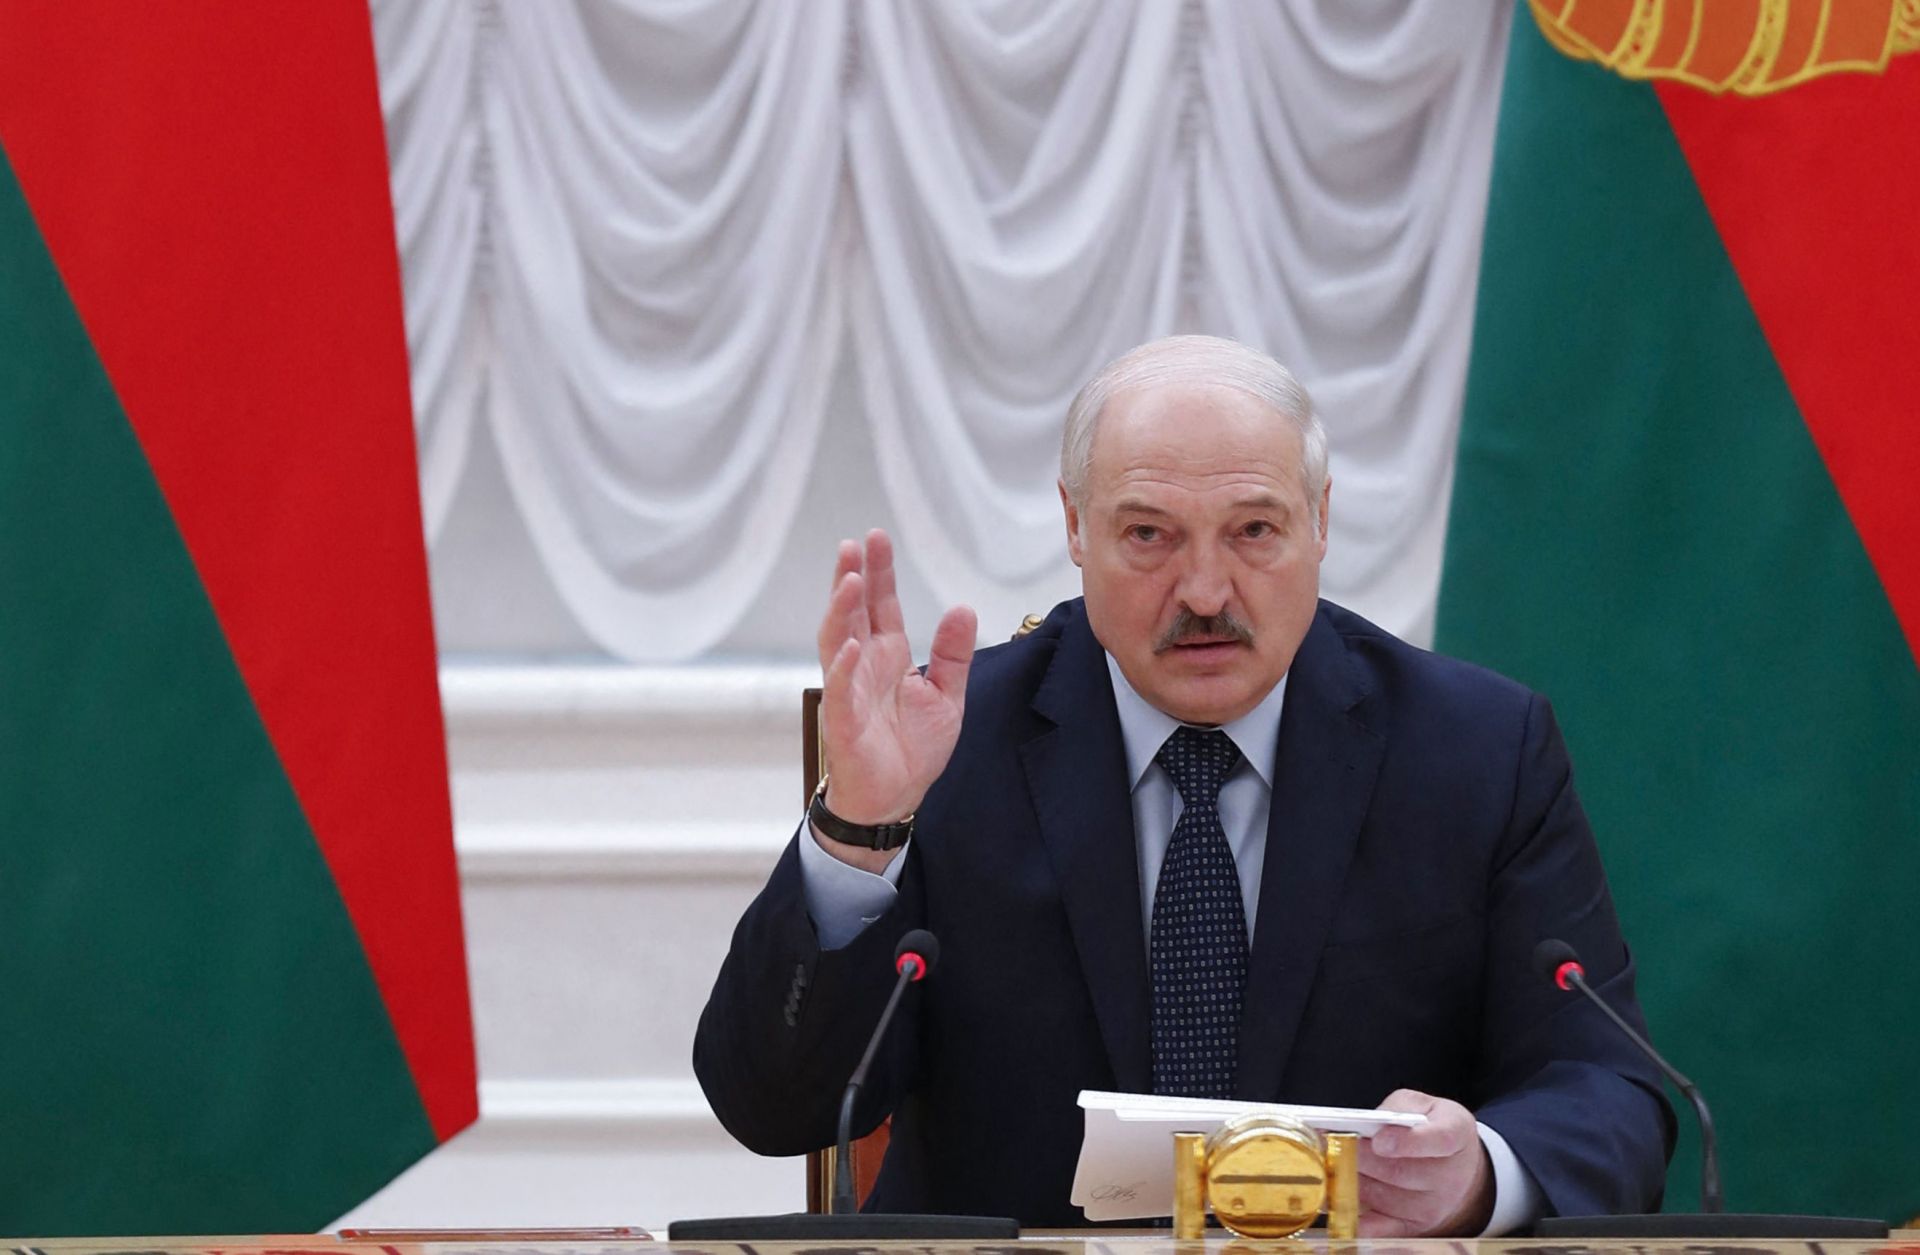 Belarusian President Aleksandr Lukashenko on May 28, 2021, in Minsk, Belarus.